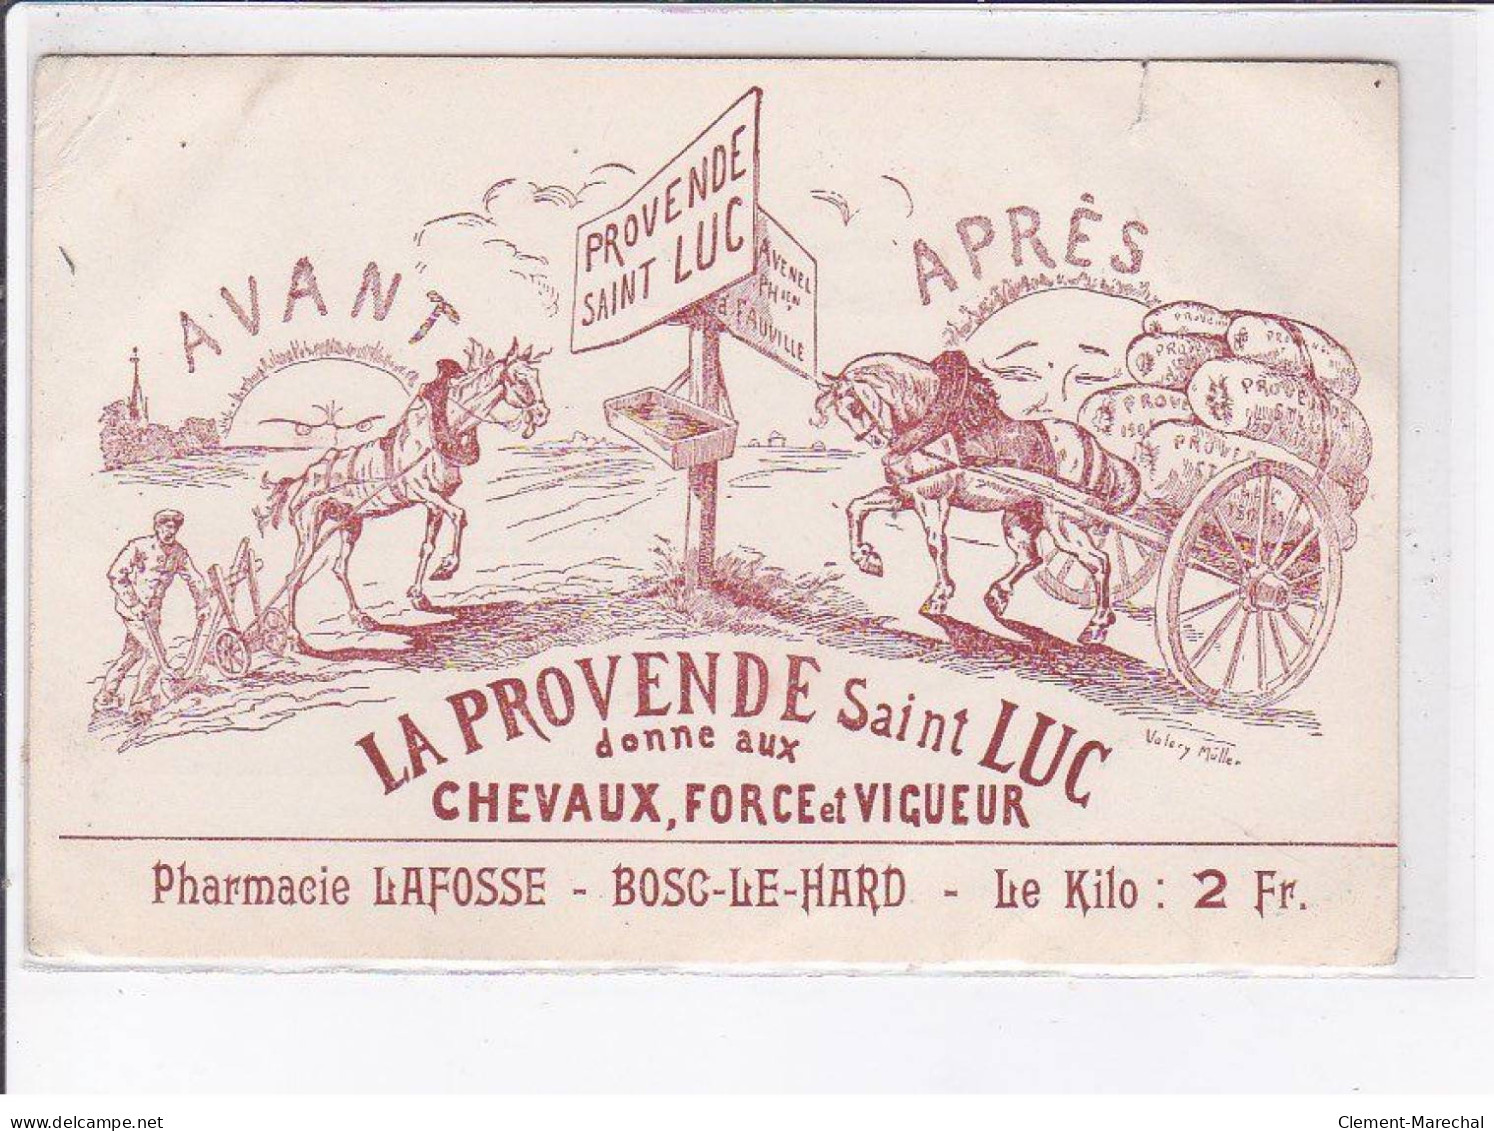 PUBLICITE: La Provende Saint-luc Donne Aux Chevaux, Force Et Vigueur, Pharmacie Lafosse, Bosc-le-hard - état - Publicidad